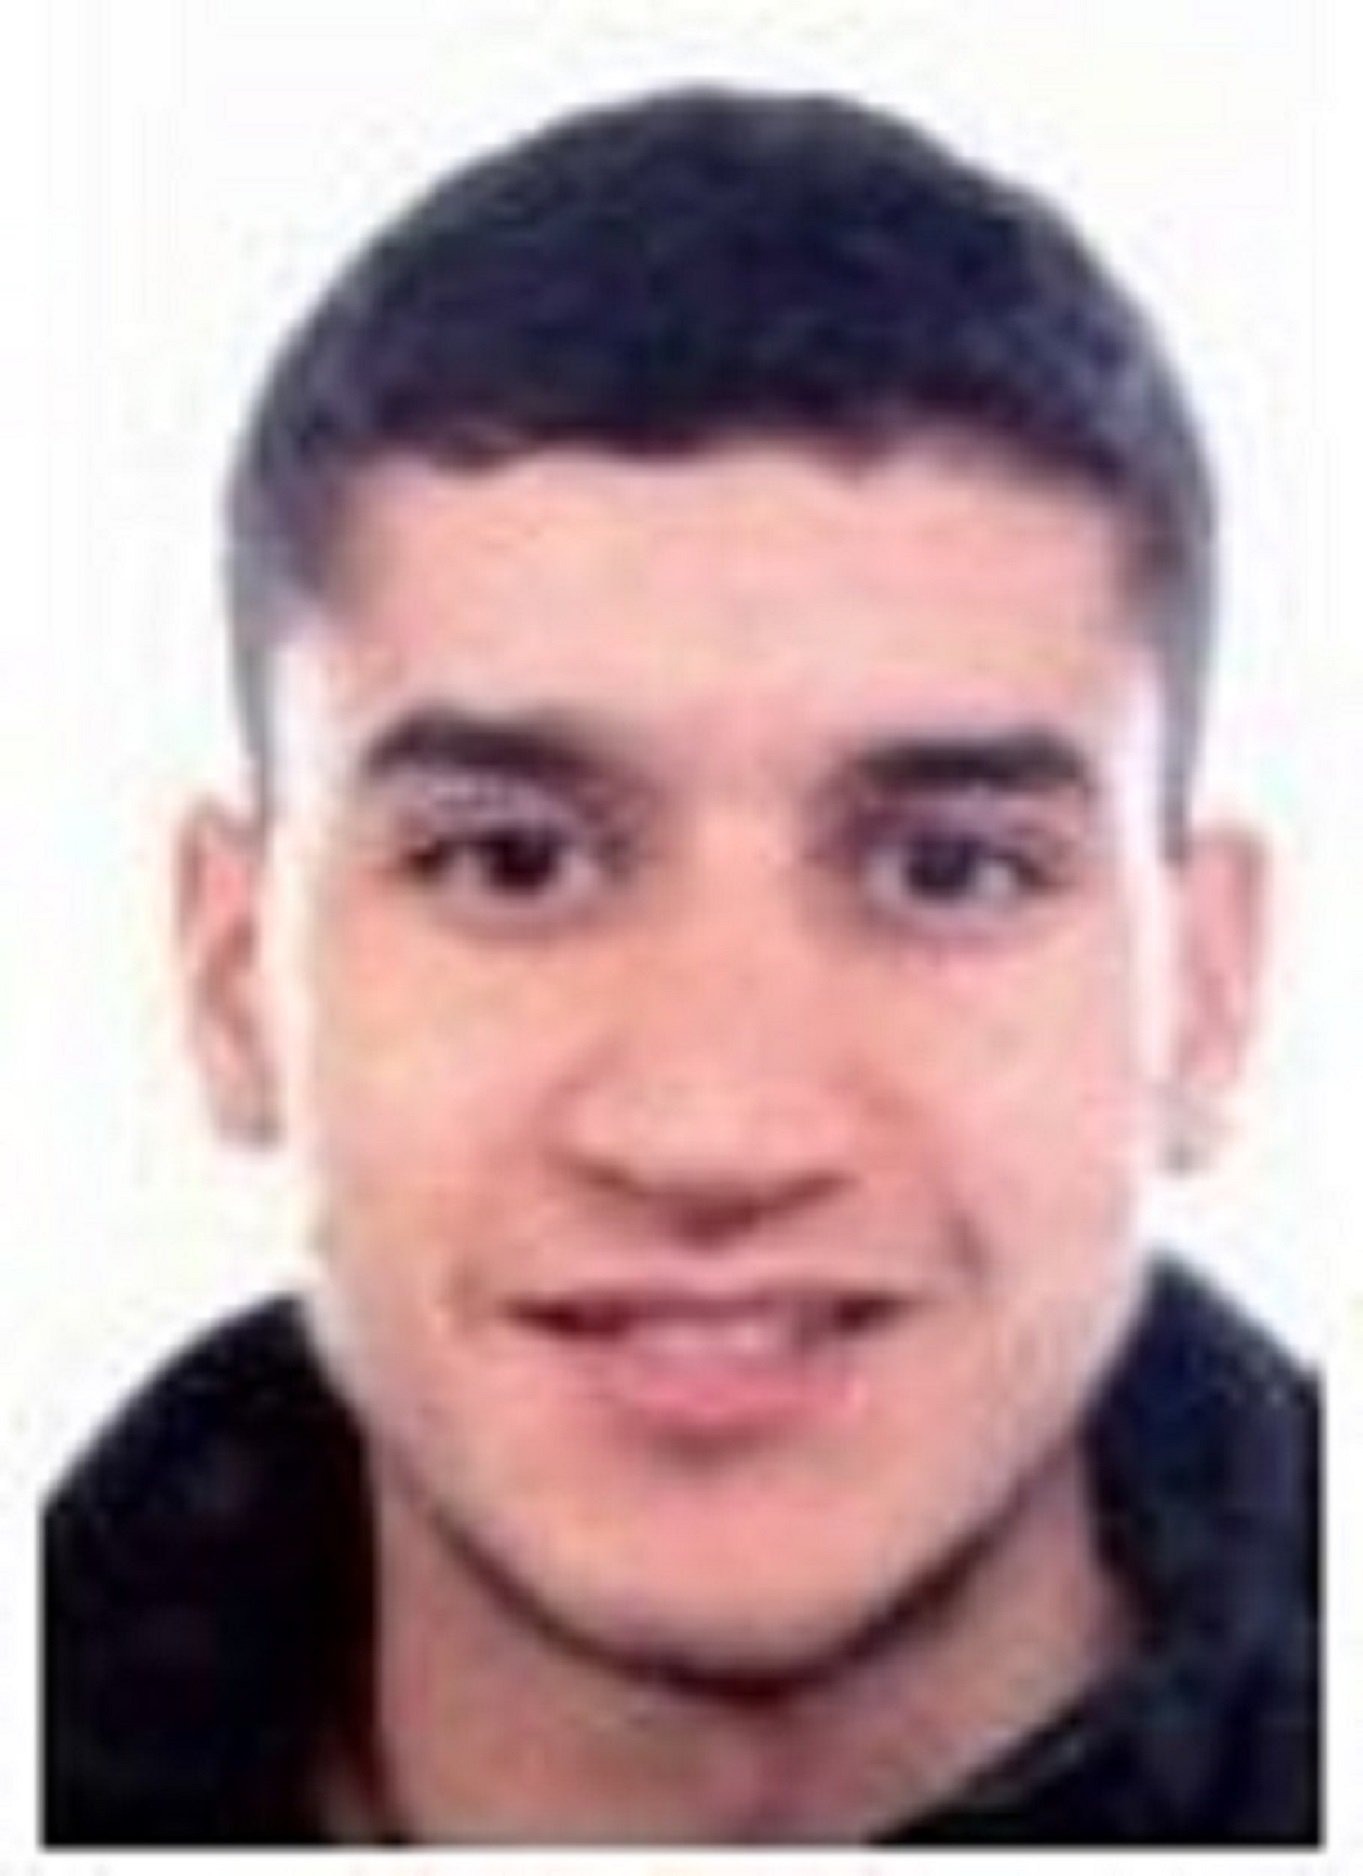 La policia demana col·laboració ciutadana per trobar Younes Abouyaaqoub